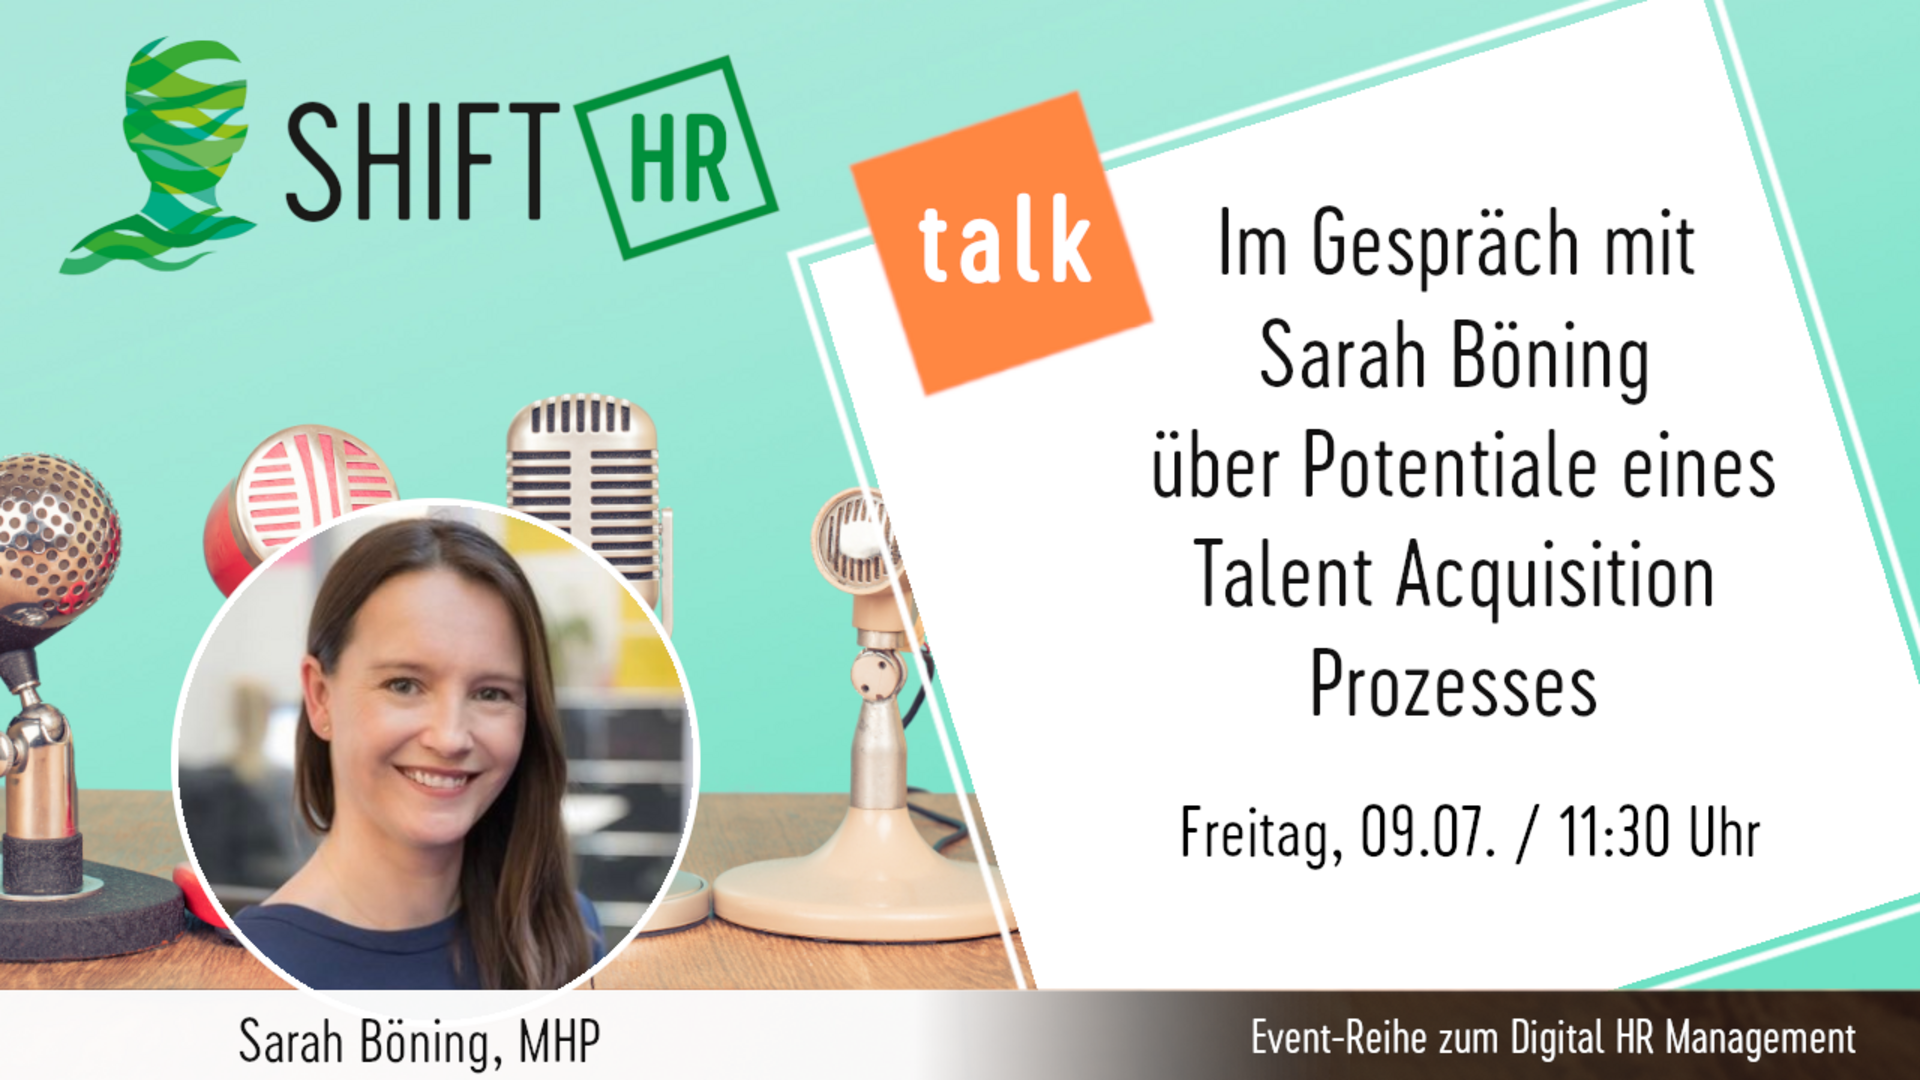 Im Gespräch mit Sarah Böning mit Empfehlungen zum Talent Acquisition Management